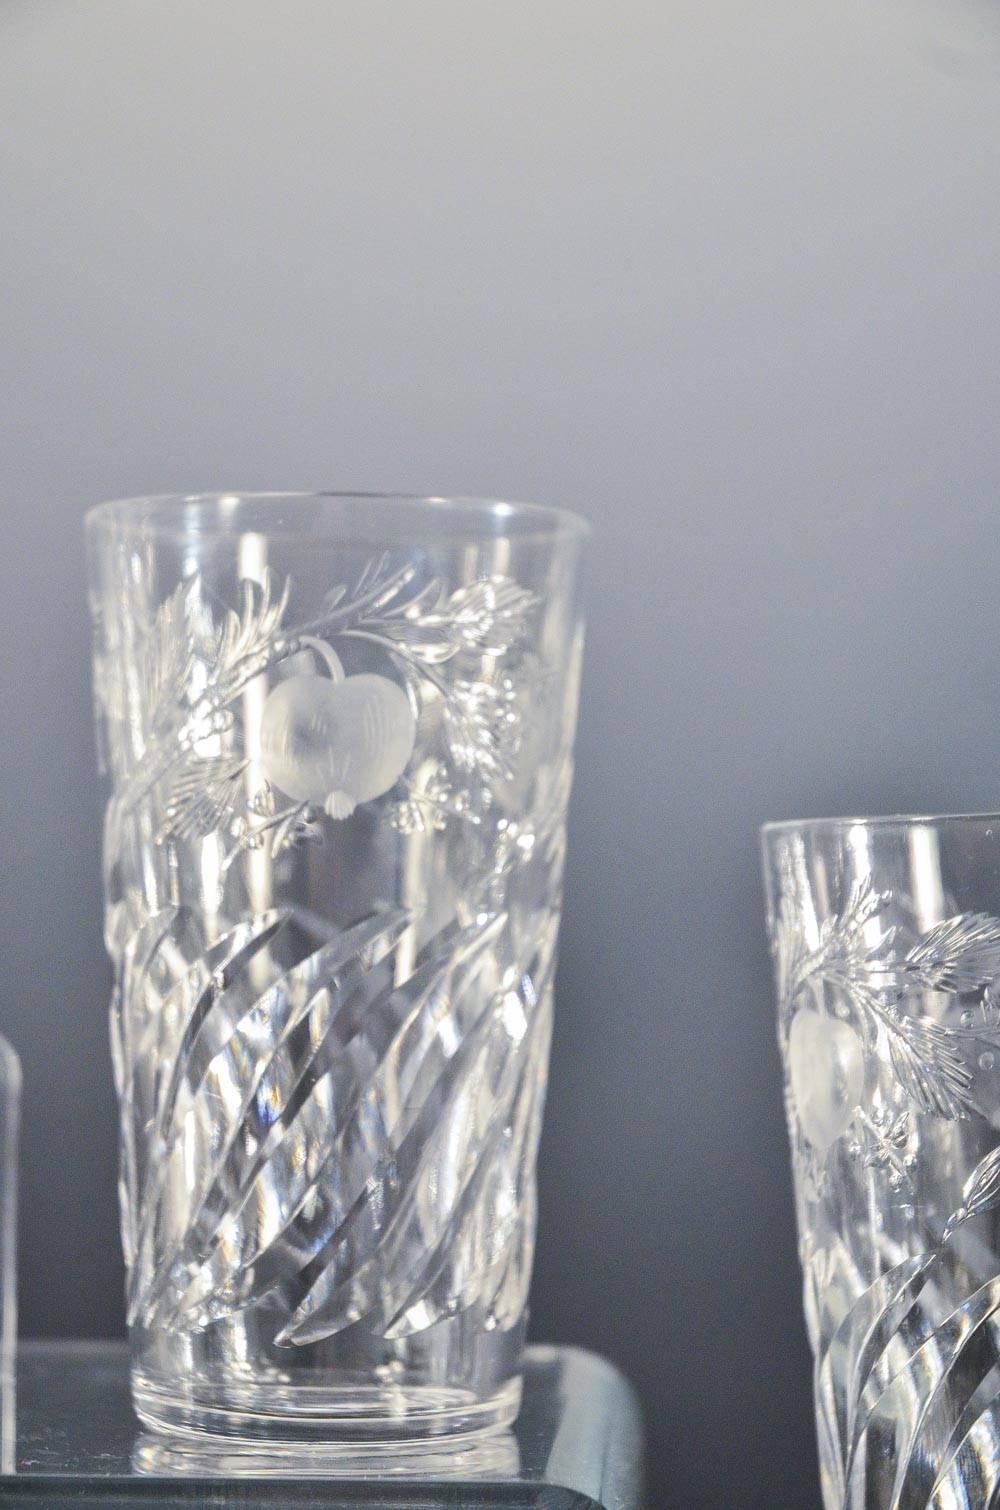 Les gobelets sont à la mode ! Cet ensemble de gobelets en cristal soufflé à la bouche a été fabriqué par T. G. Hawkes, emblématique souffleur et graveur de verre à Corning, dans l'État de New York. Ces verres sont taillés à la meule selon le motif